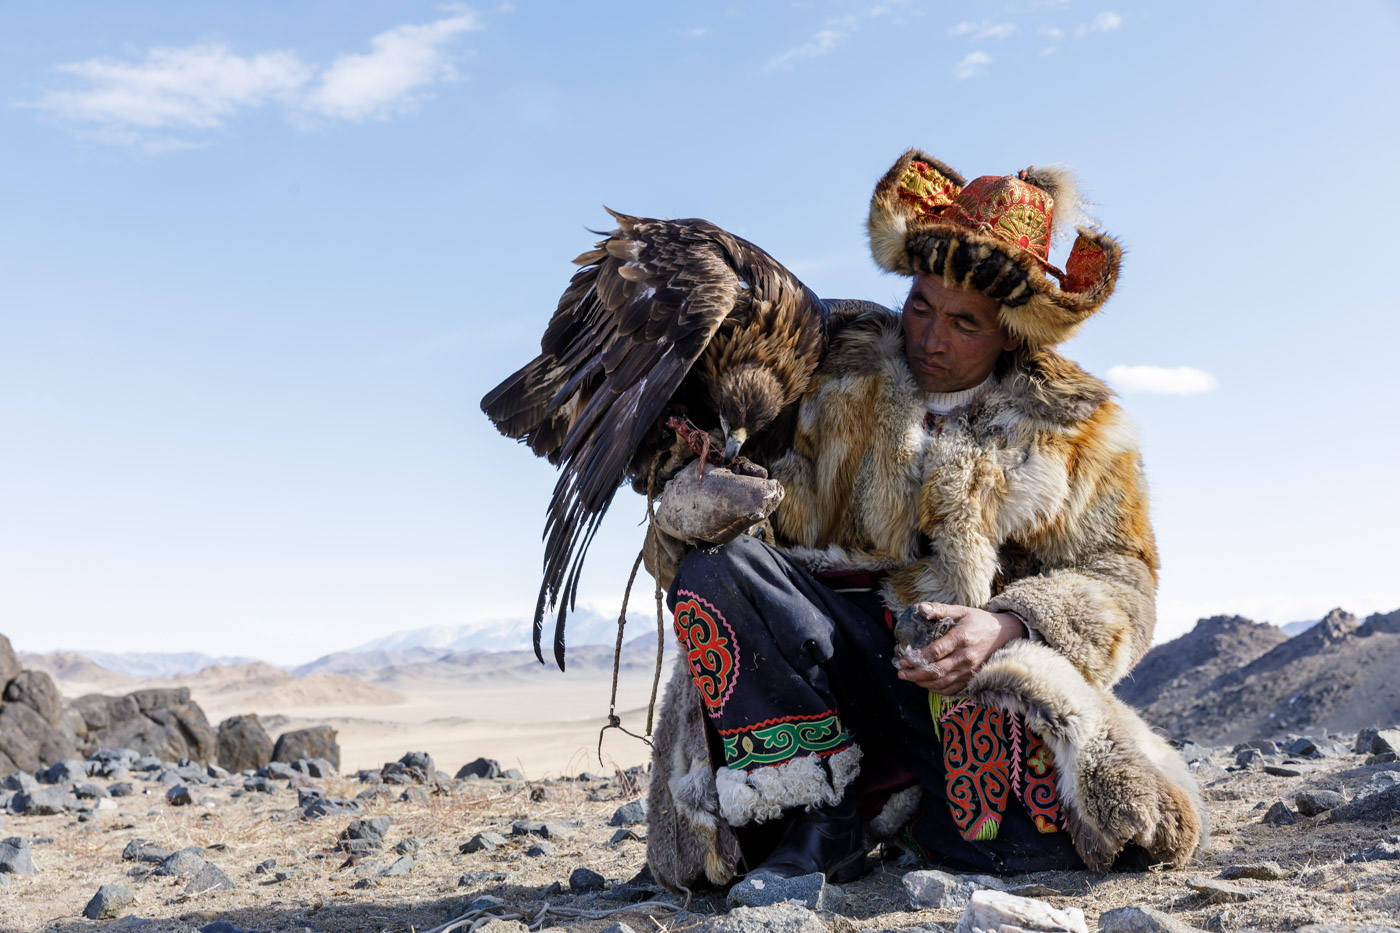 A Kazak Mongolian eagle hunter and his eagle